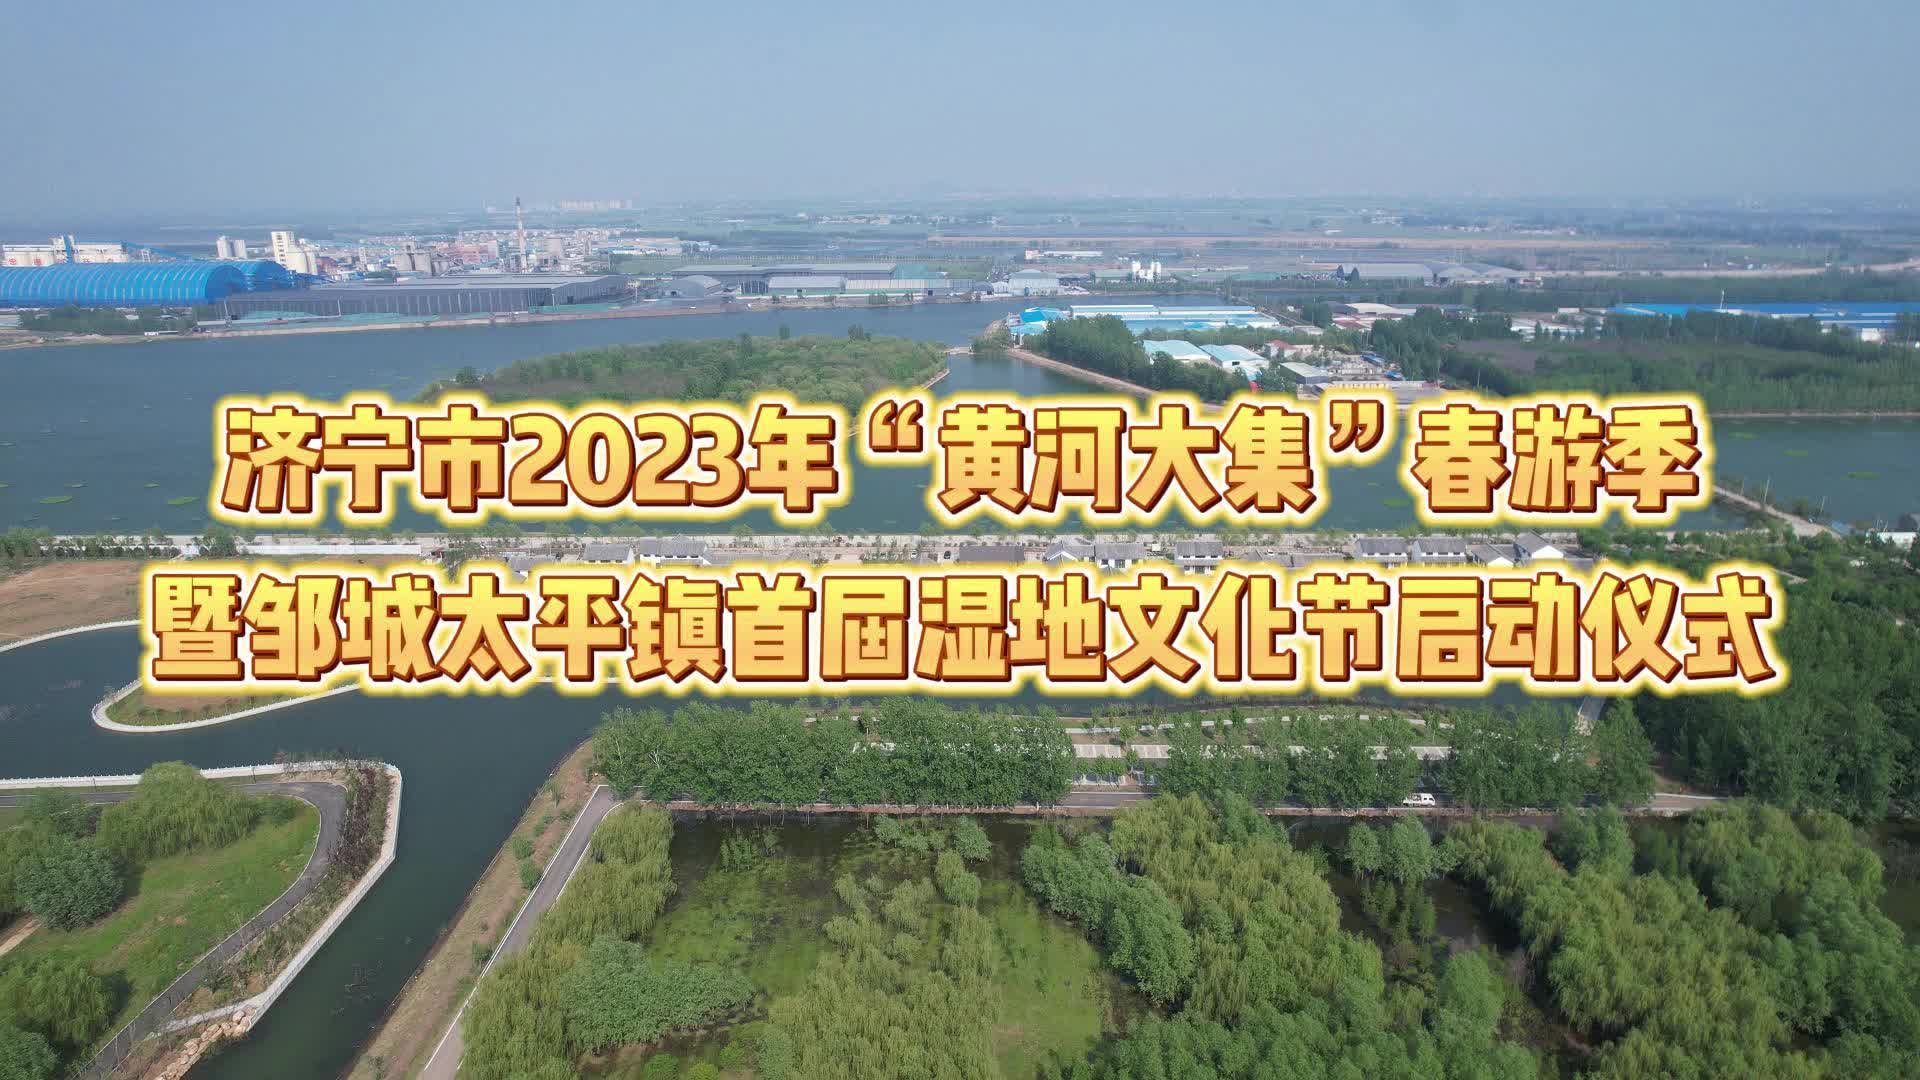 【邹视频·新闻】96秒 | 太平镇首届湿地文化节启动仪式预热进行中